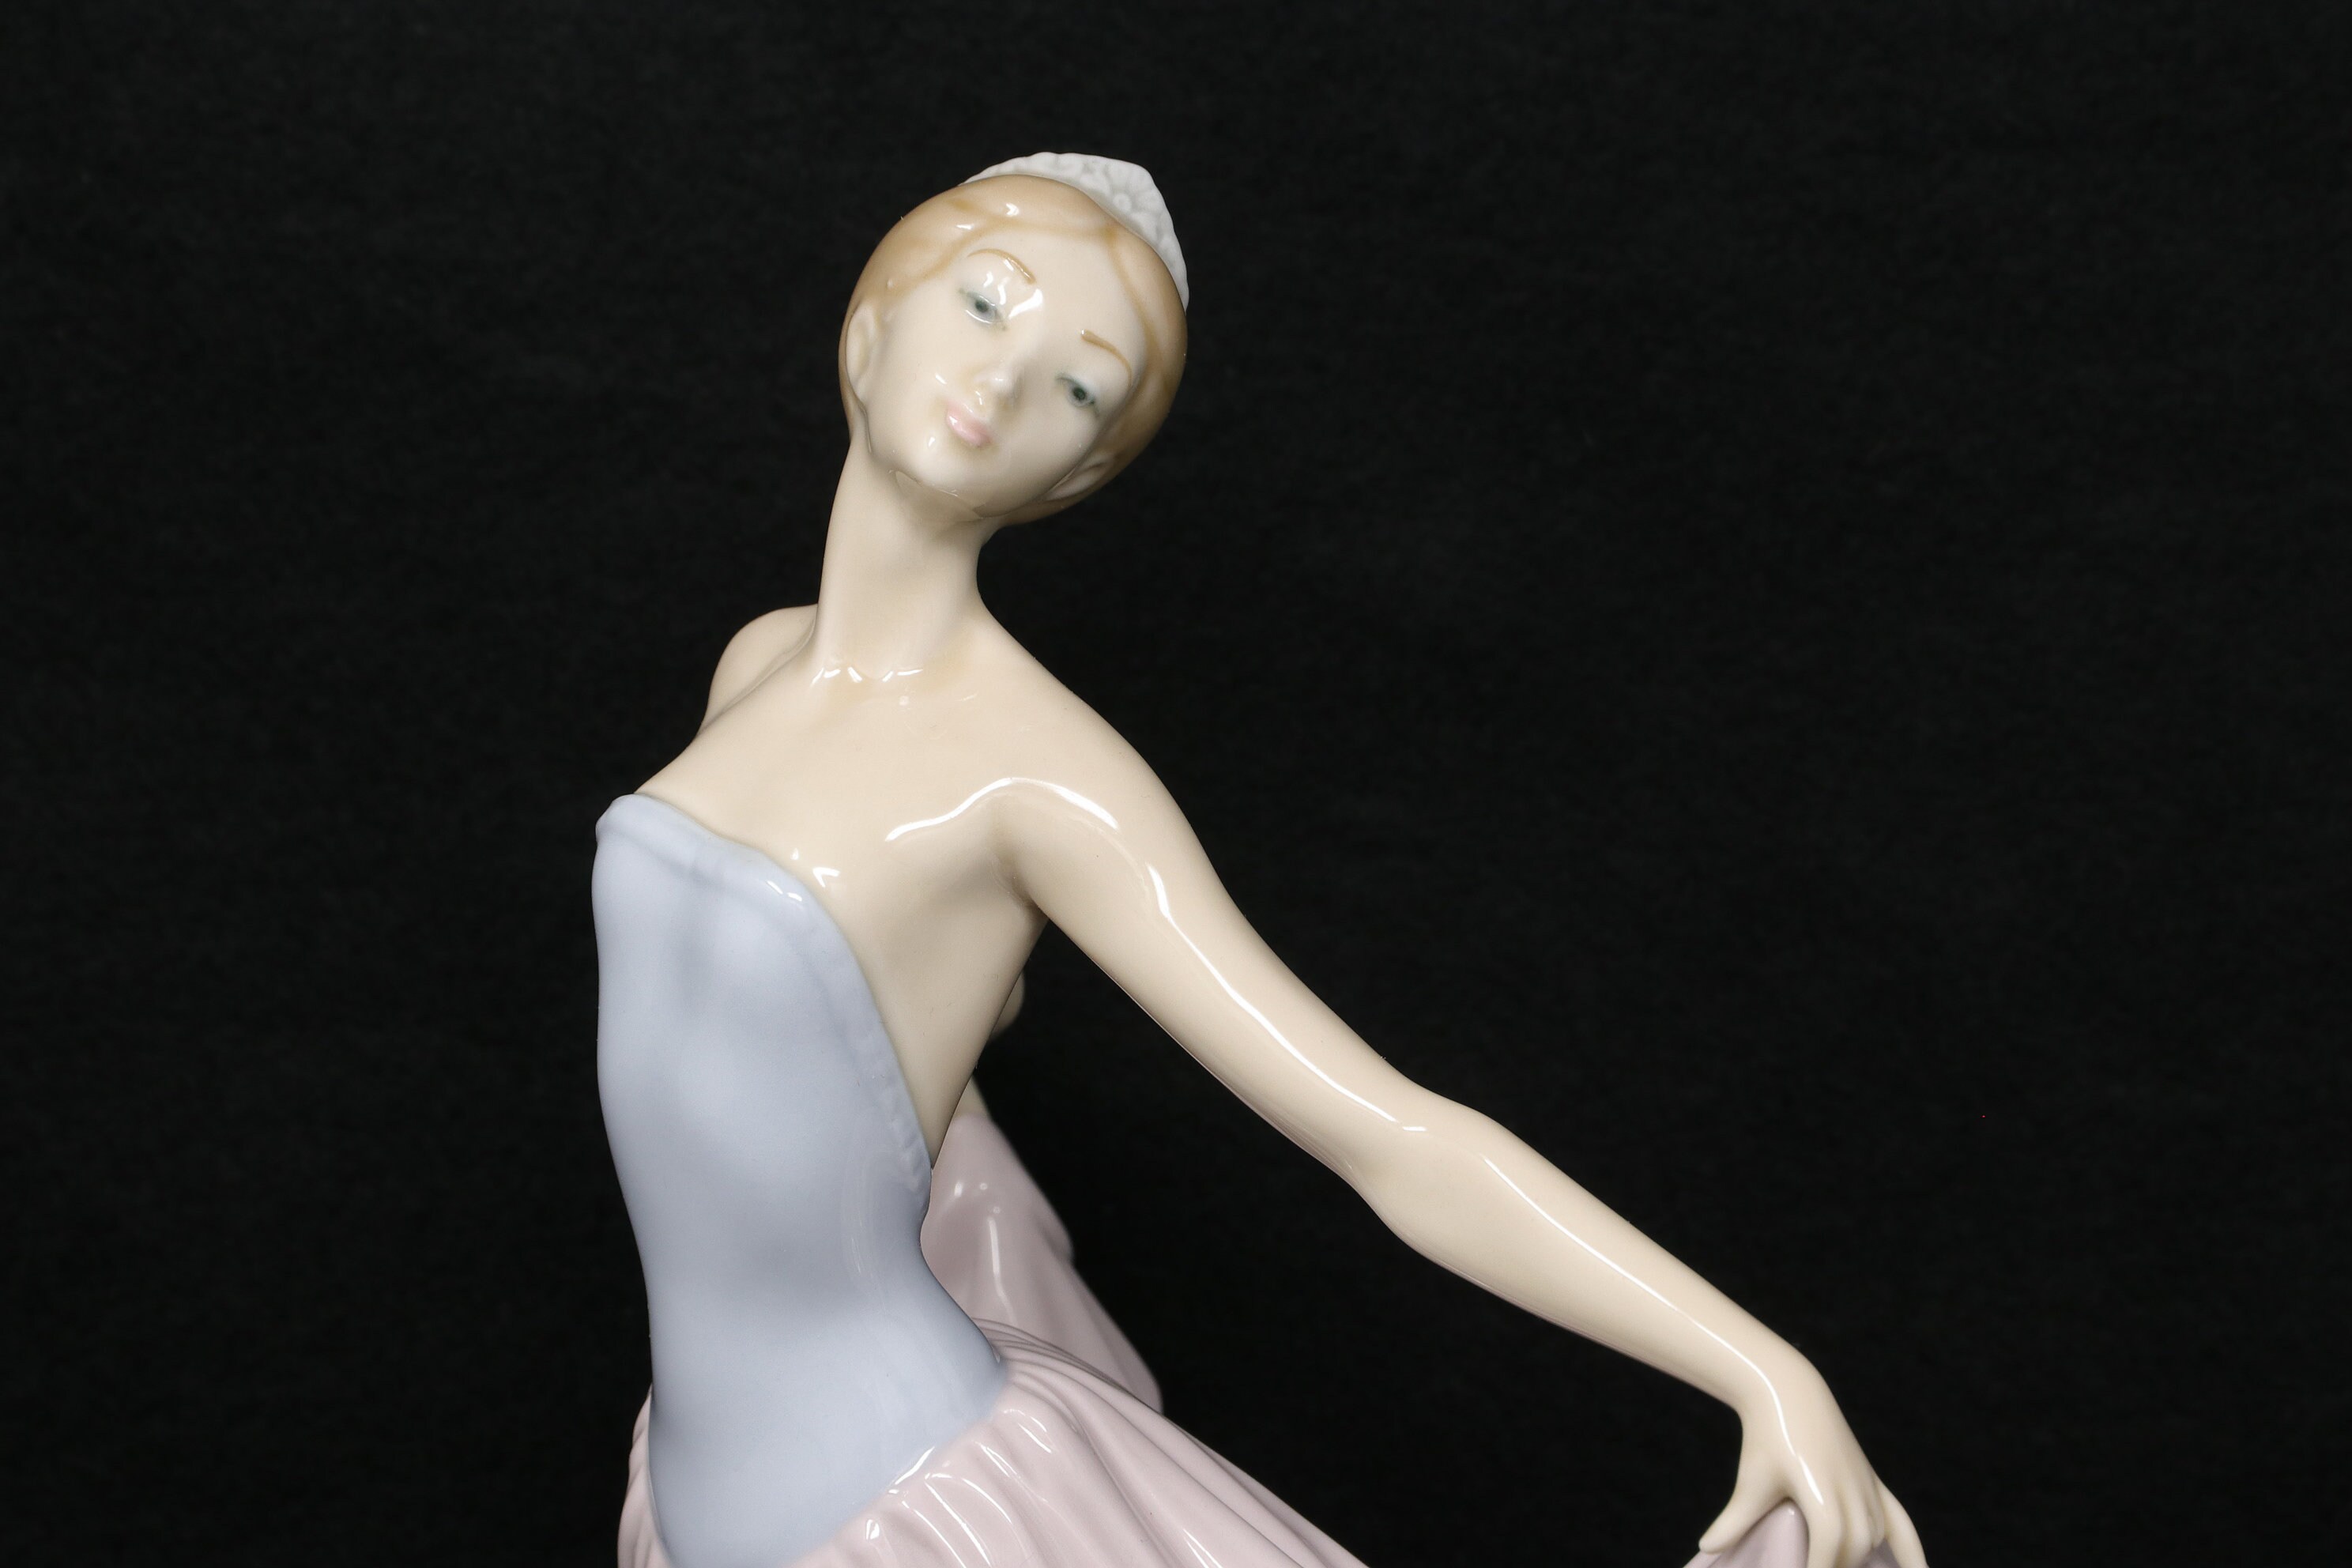  LLADRÓ My Dance Class Ballet Figurine. White